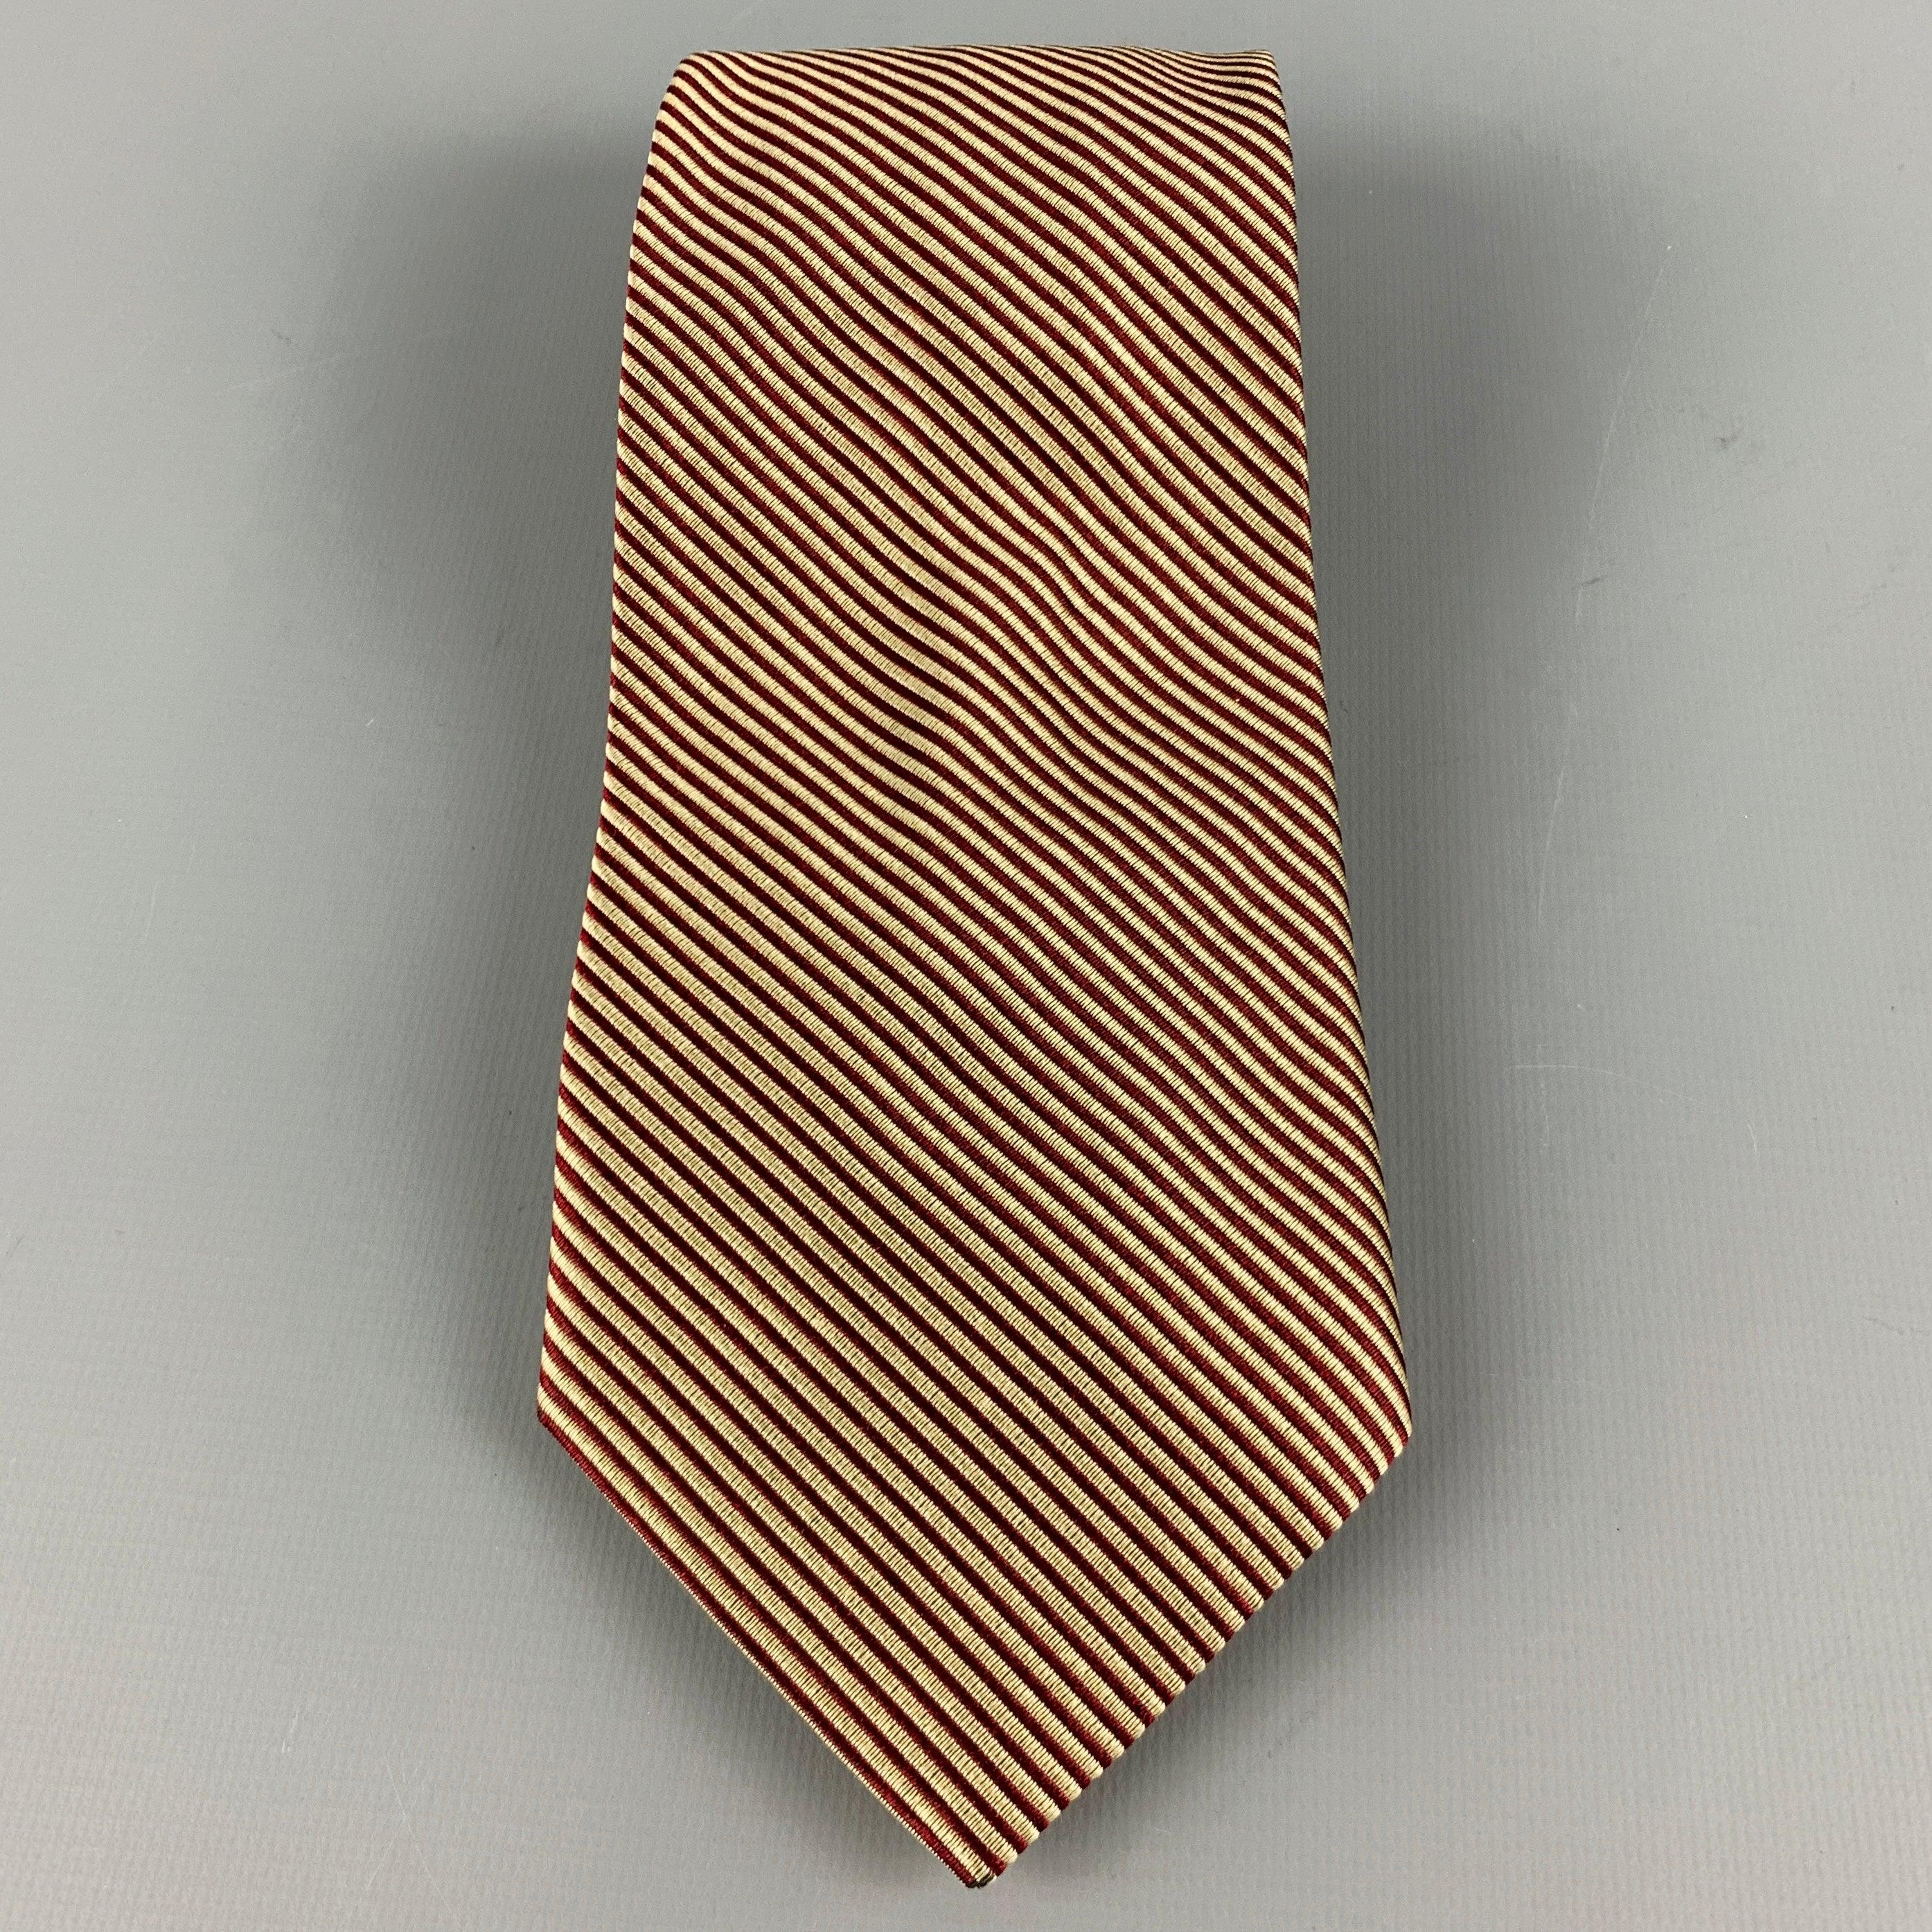 FENDI
Krawatte aus burgunderfarbenem und goldenem Seidenjacquard mit diagonalem Streifenmuster. Handgefertigt in Italien, ausgezeichneter gebrauchter Zustand. 

Abmessungen: 
  Breite: 3,5 Zoll Länge: 56 Zoll 
  
  
 
Referenz-Nr.: 128759
Kategorie: